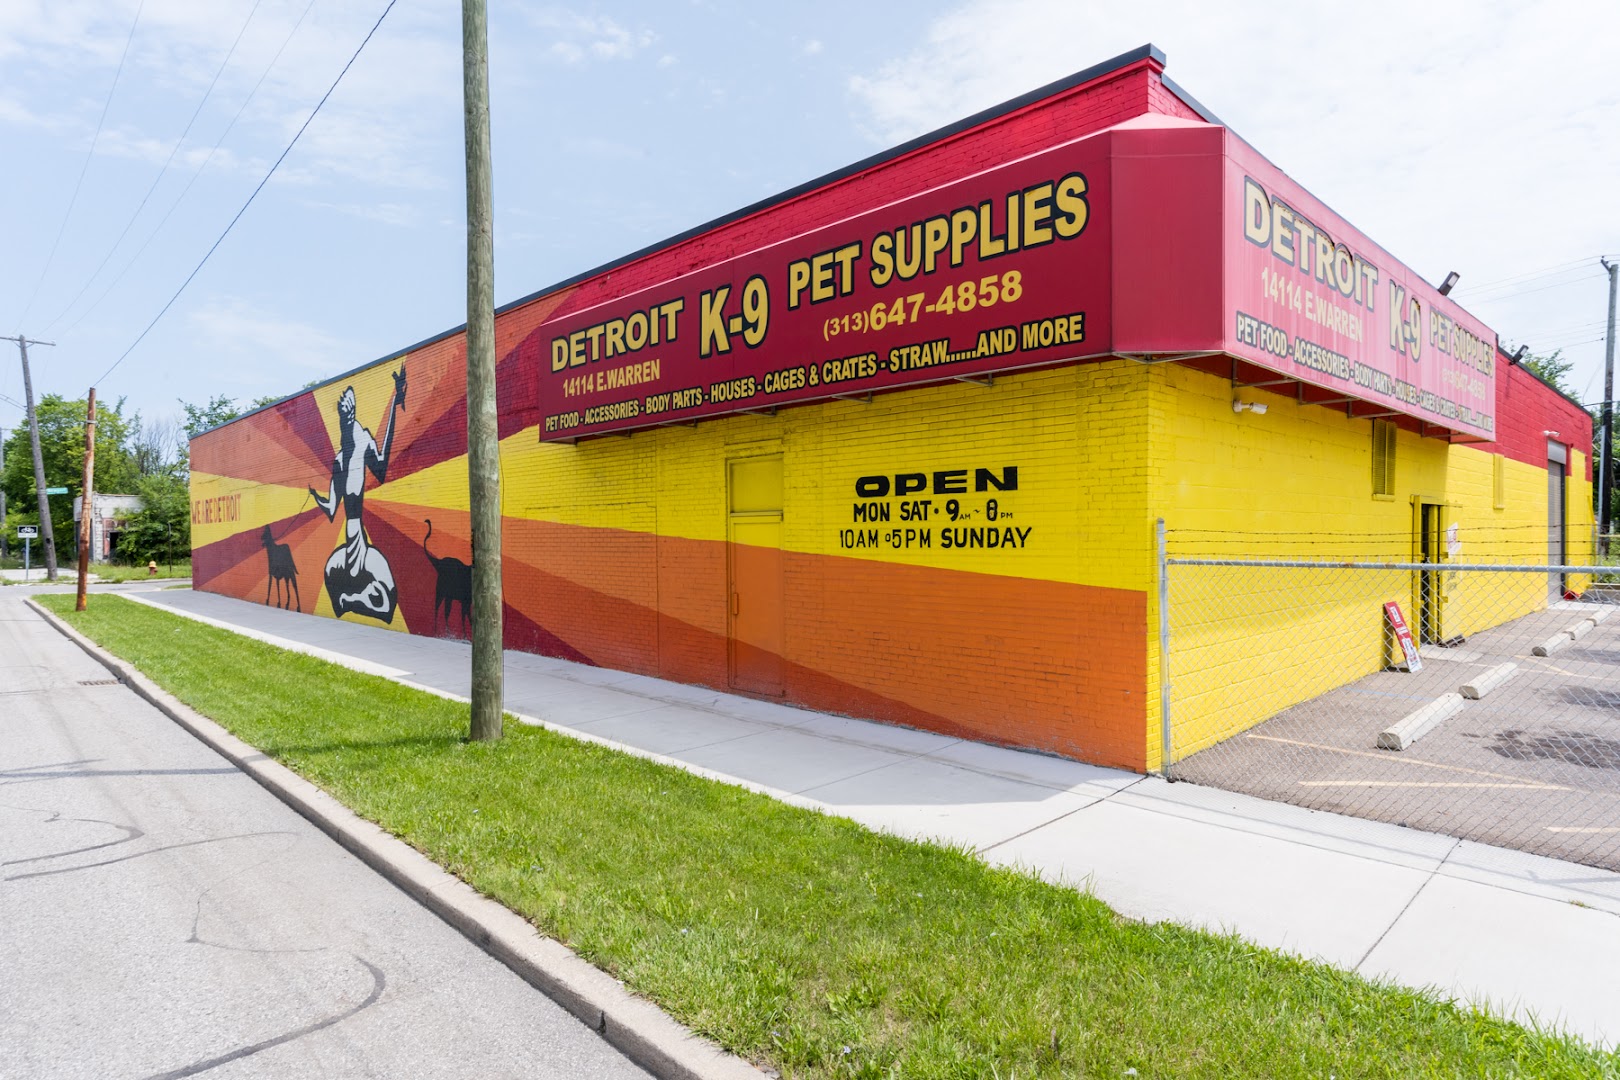 Detroit K-9 Pet Supplies